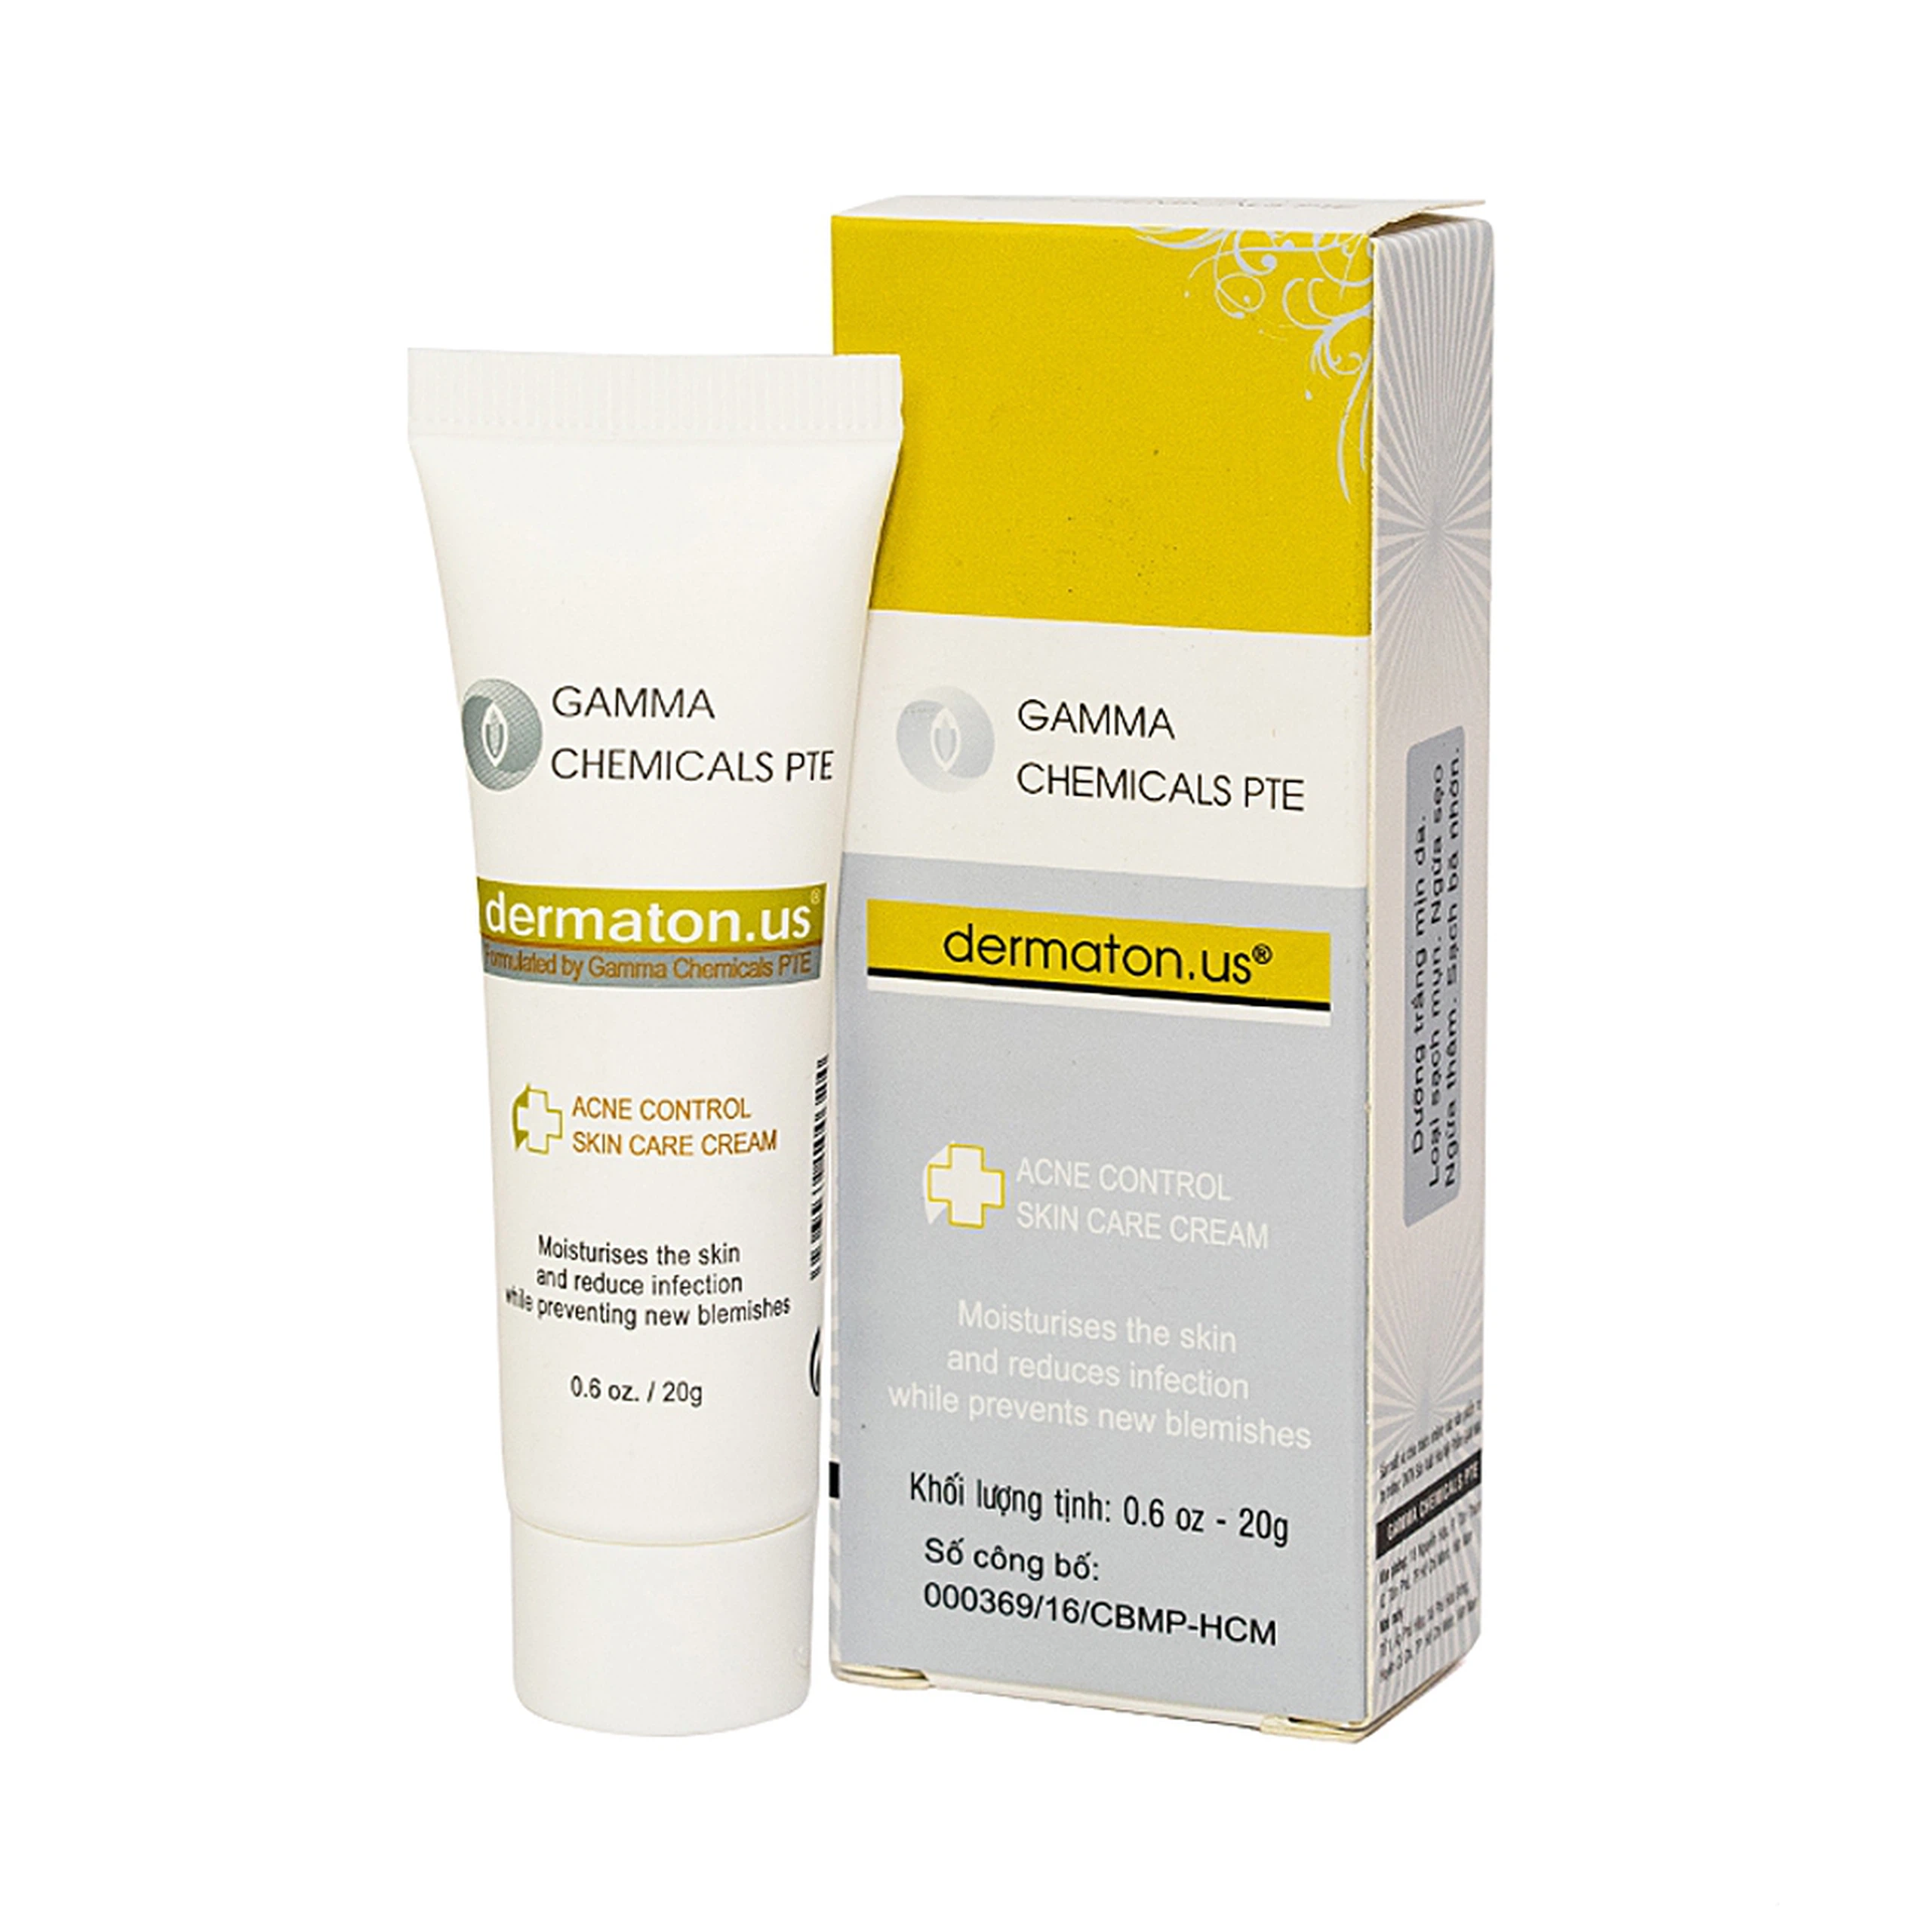 Kem Dermaton.US Acne Control SkinCare Cream Gamma dưỡng trắng, sạch mụn, ngừa sẹo thâm, sạch bã nhờn (20g)